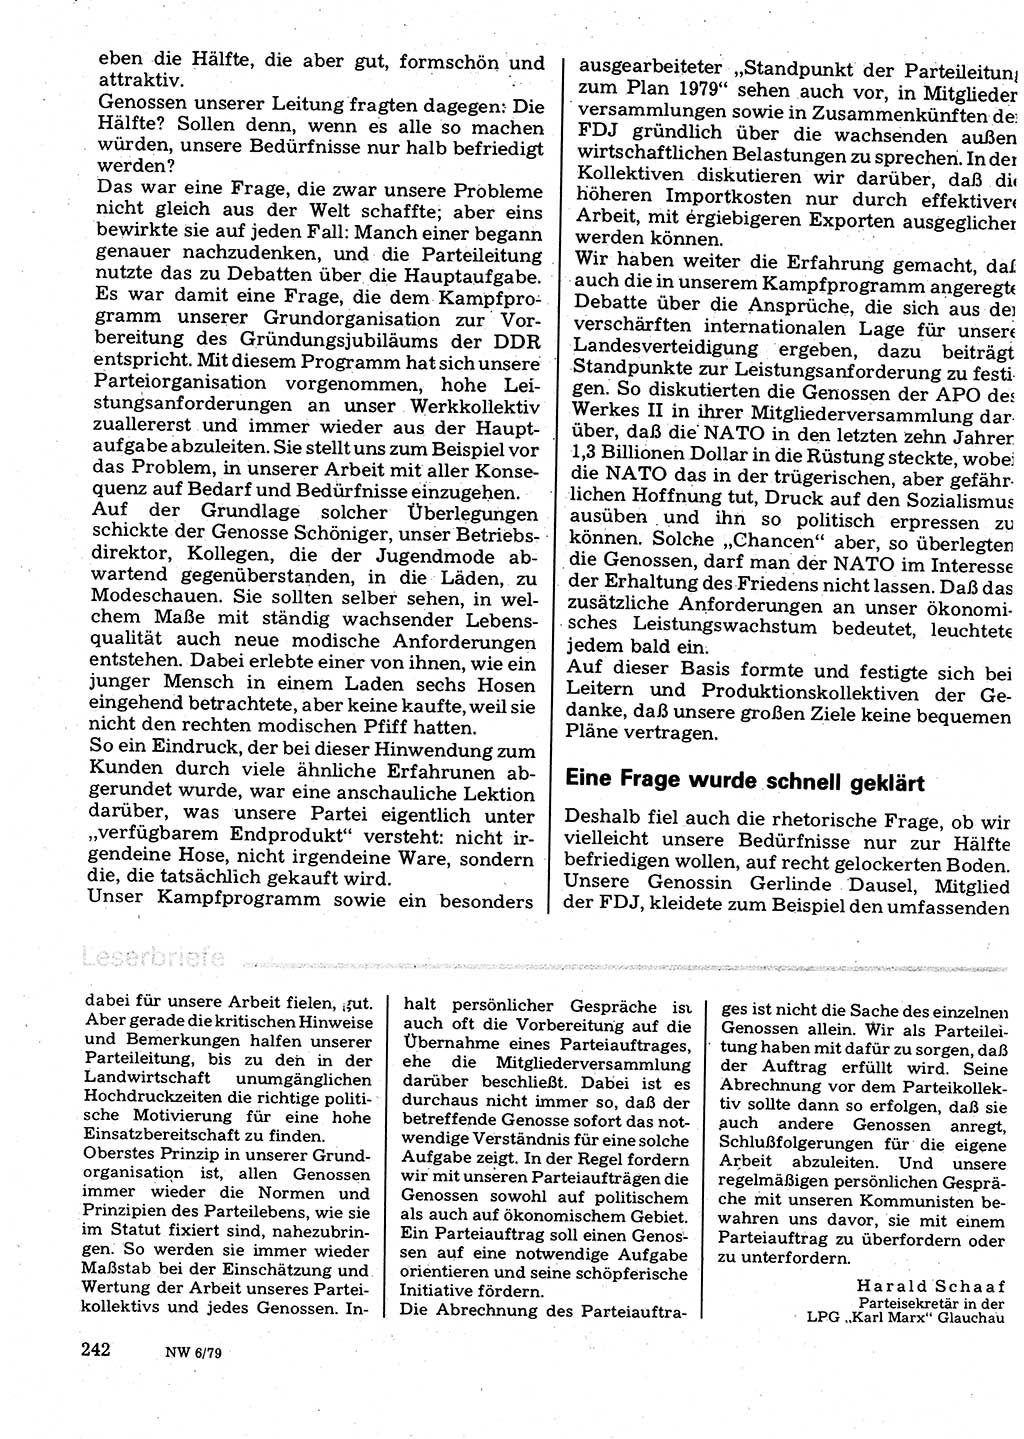 Neuer Weg (NW), Organ des Zentralkomitees (ZK) der SED (Sozialistische Einheitspartei Deutschlands) für Fragen des Parteilebens, 34. Jahrgang [Deutsche Demokratische Republik (DDR)] 1979, Seite 242 (NW ZK SED DDR 1979, S. 242)